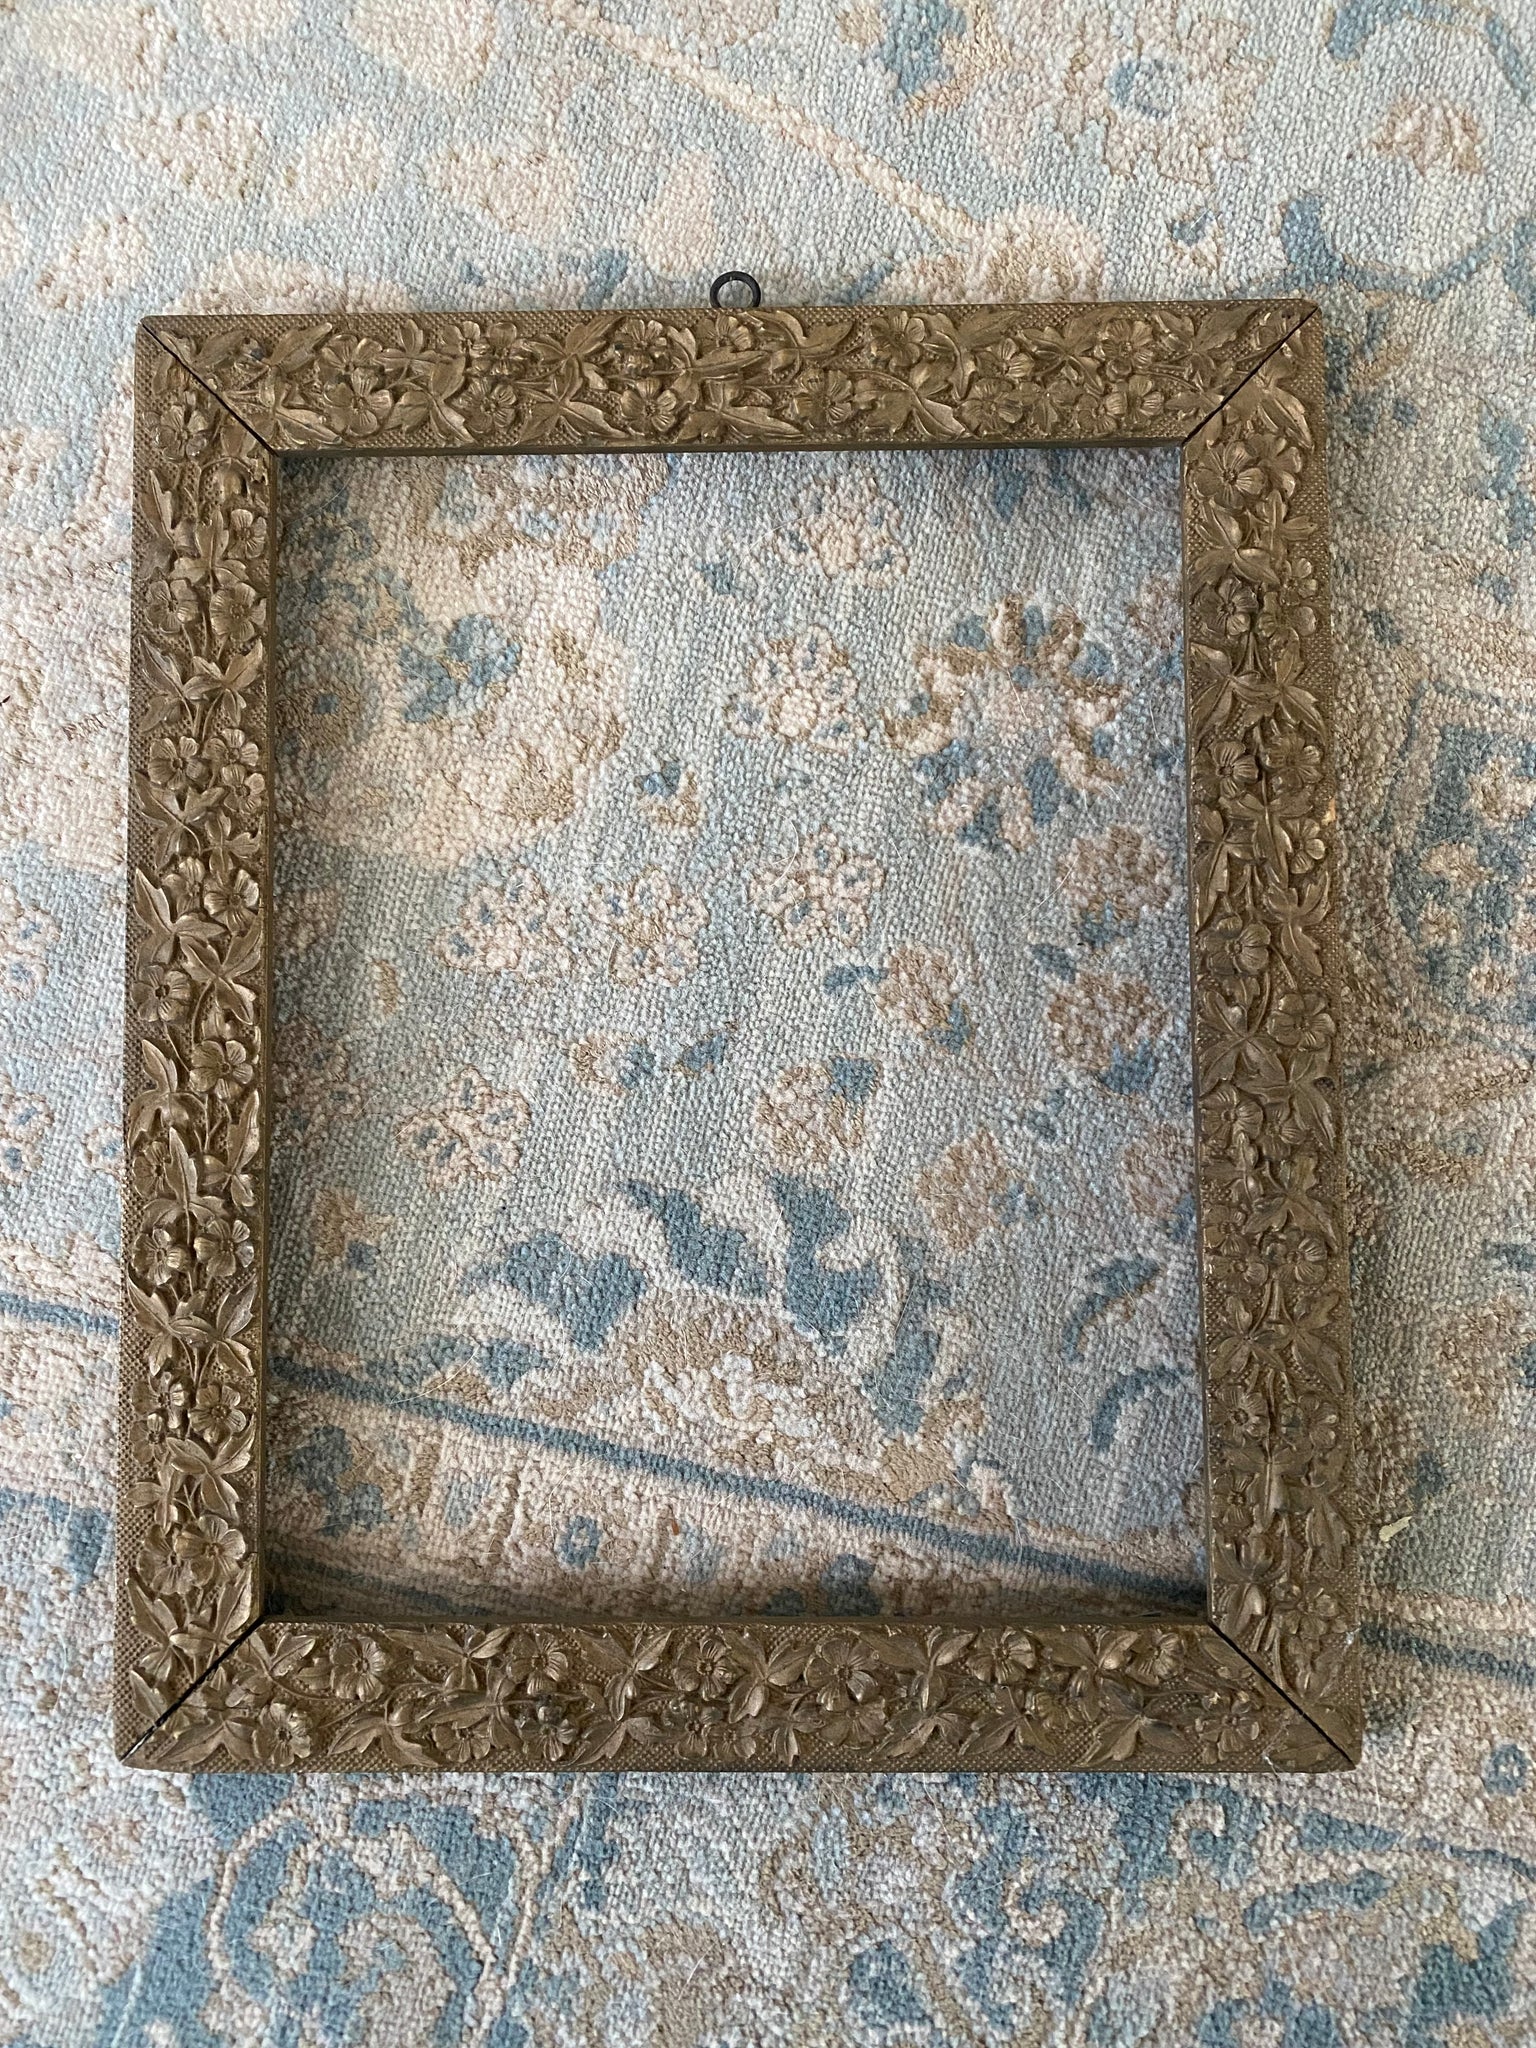 Antique carved floral wood frame